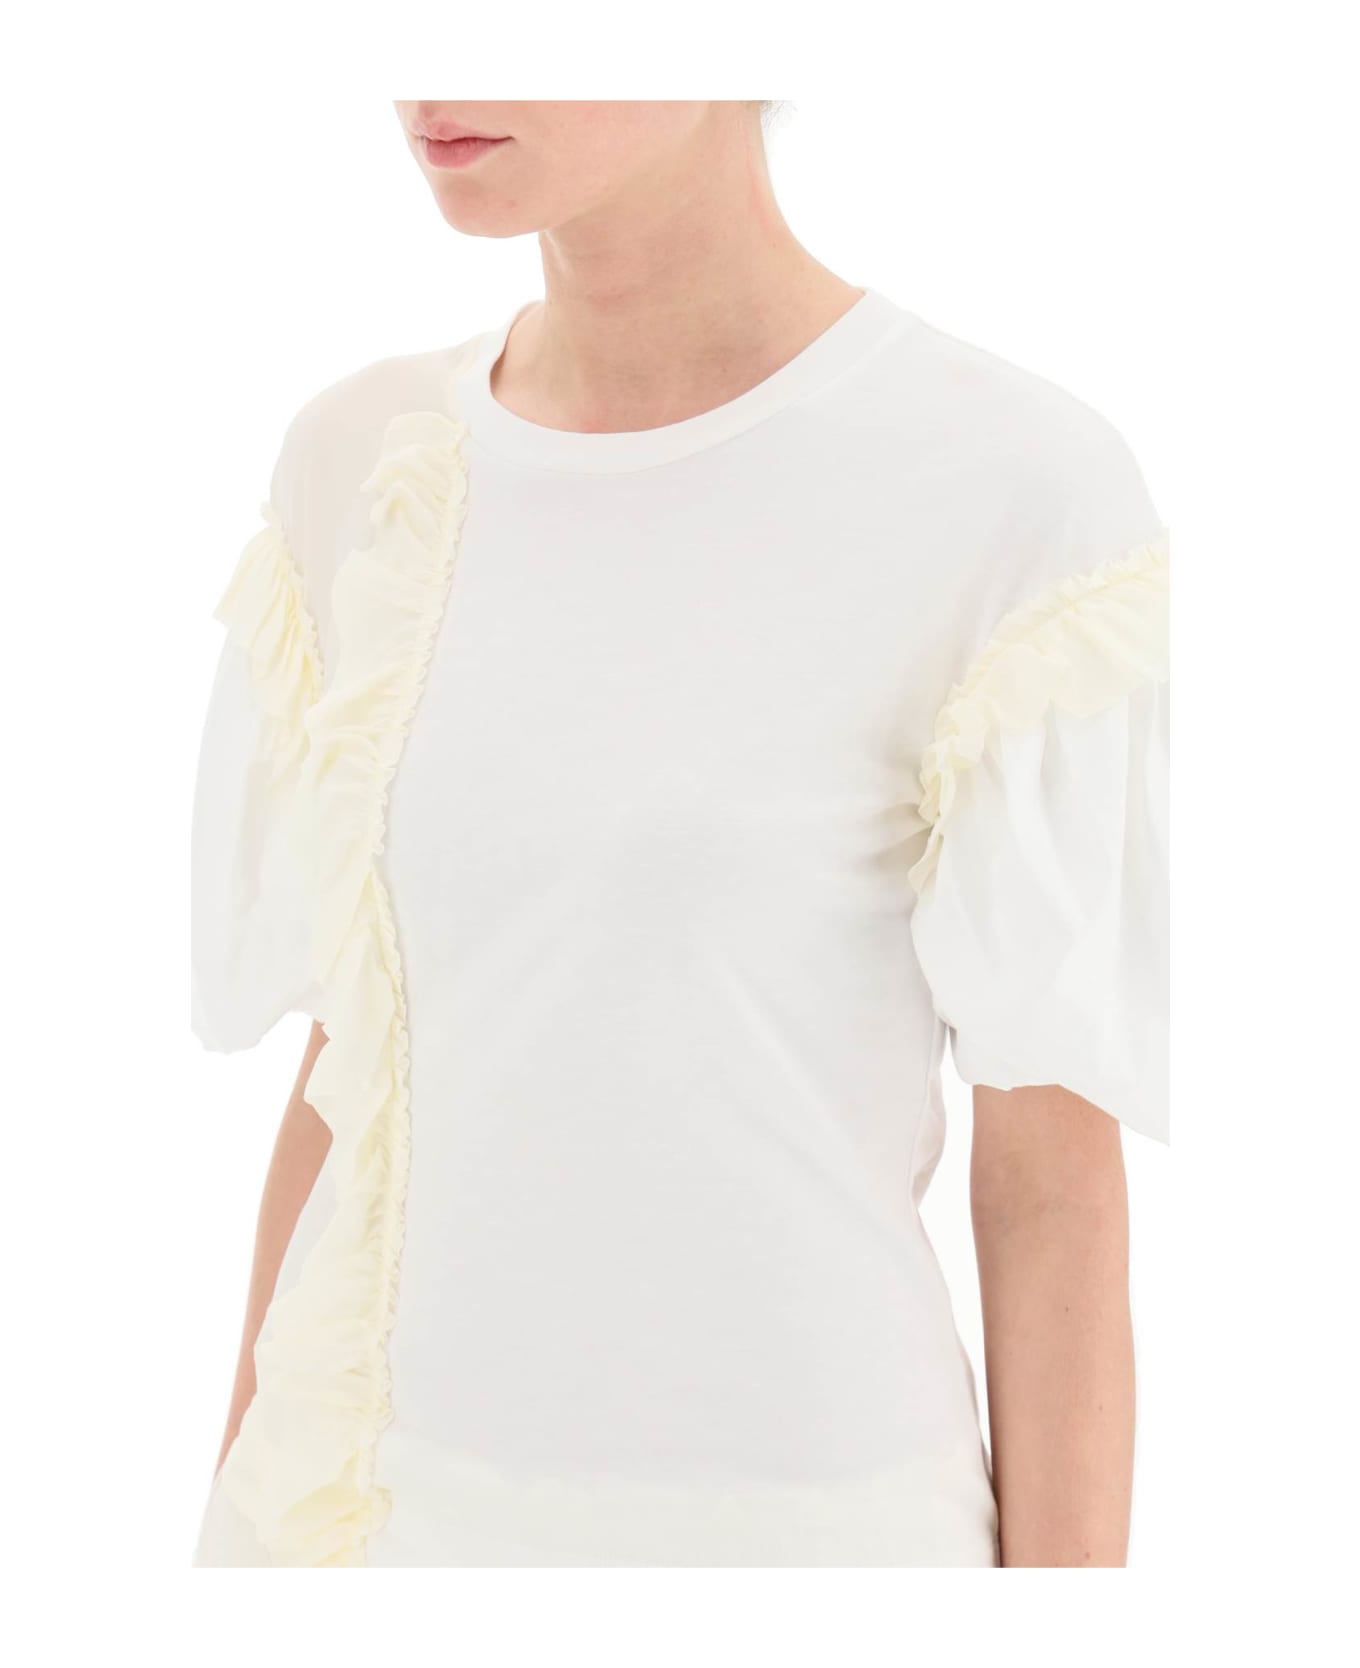 Simone Rocha Ruffled Jersey And Organdie T-shirt - WHITE CREAM (White)